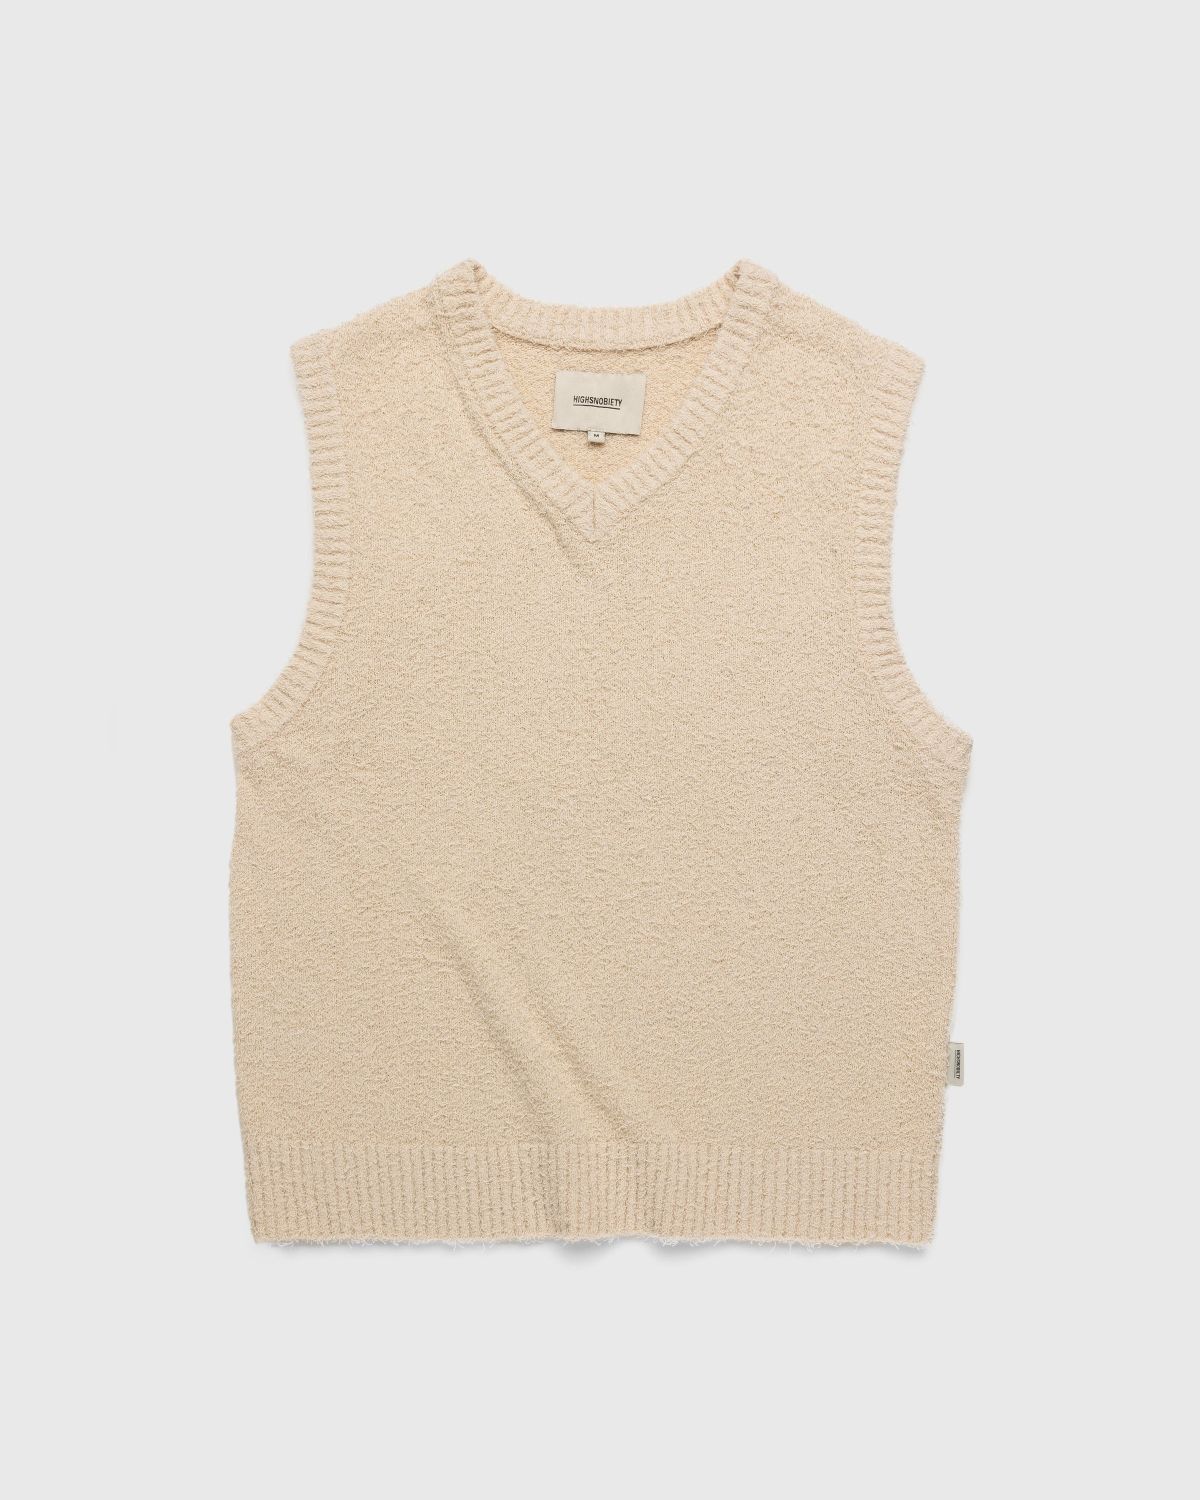 Highsnobiety – V-Neck Sweater Vest Beige - Gilets - Beige - Image 1